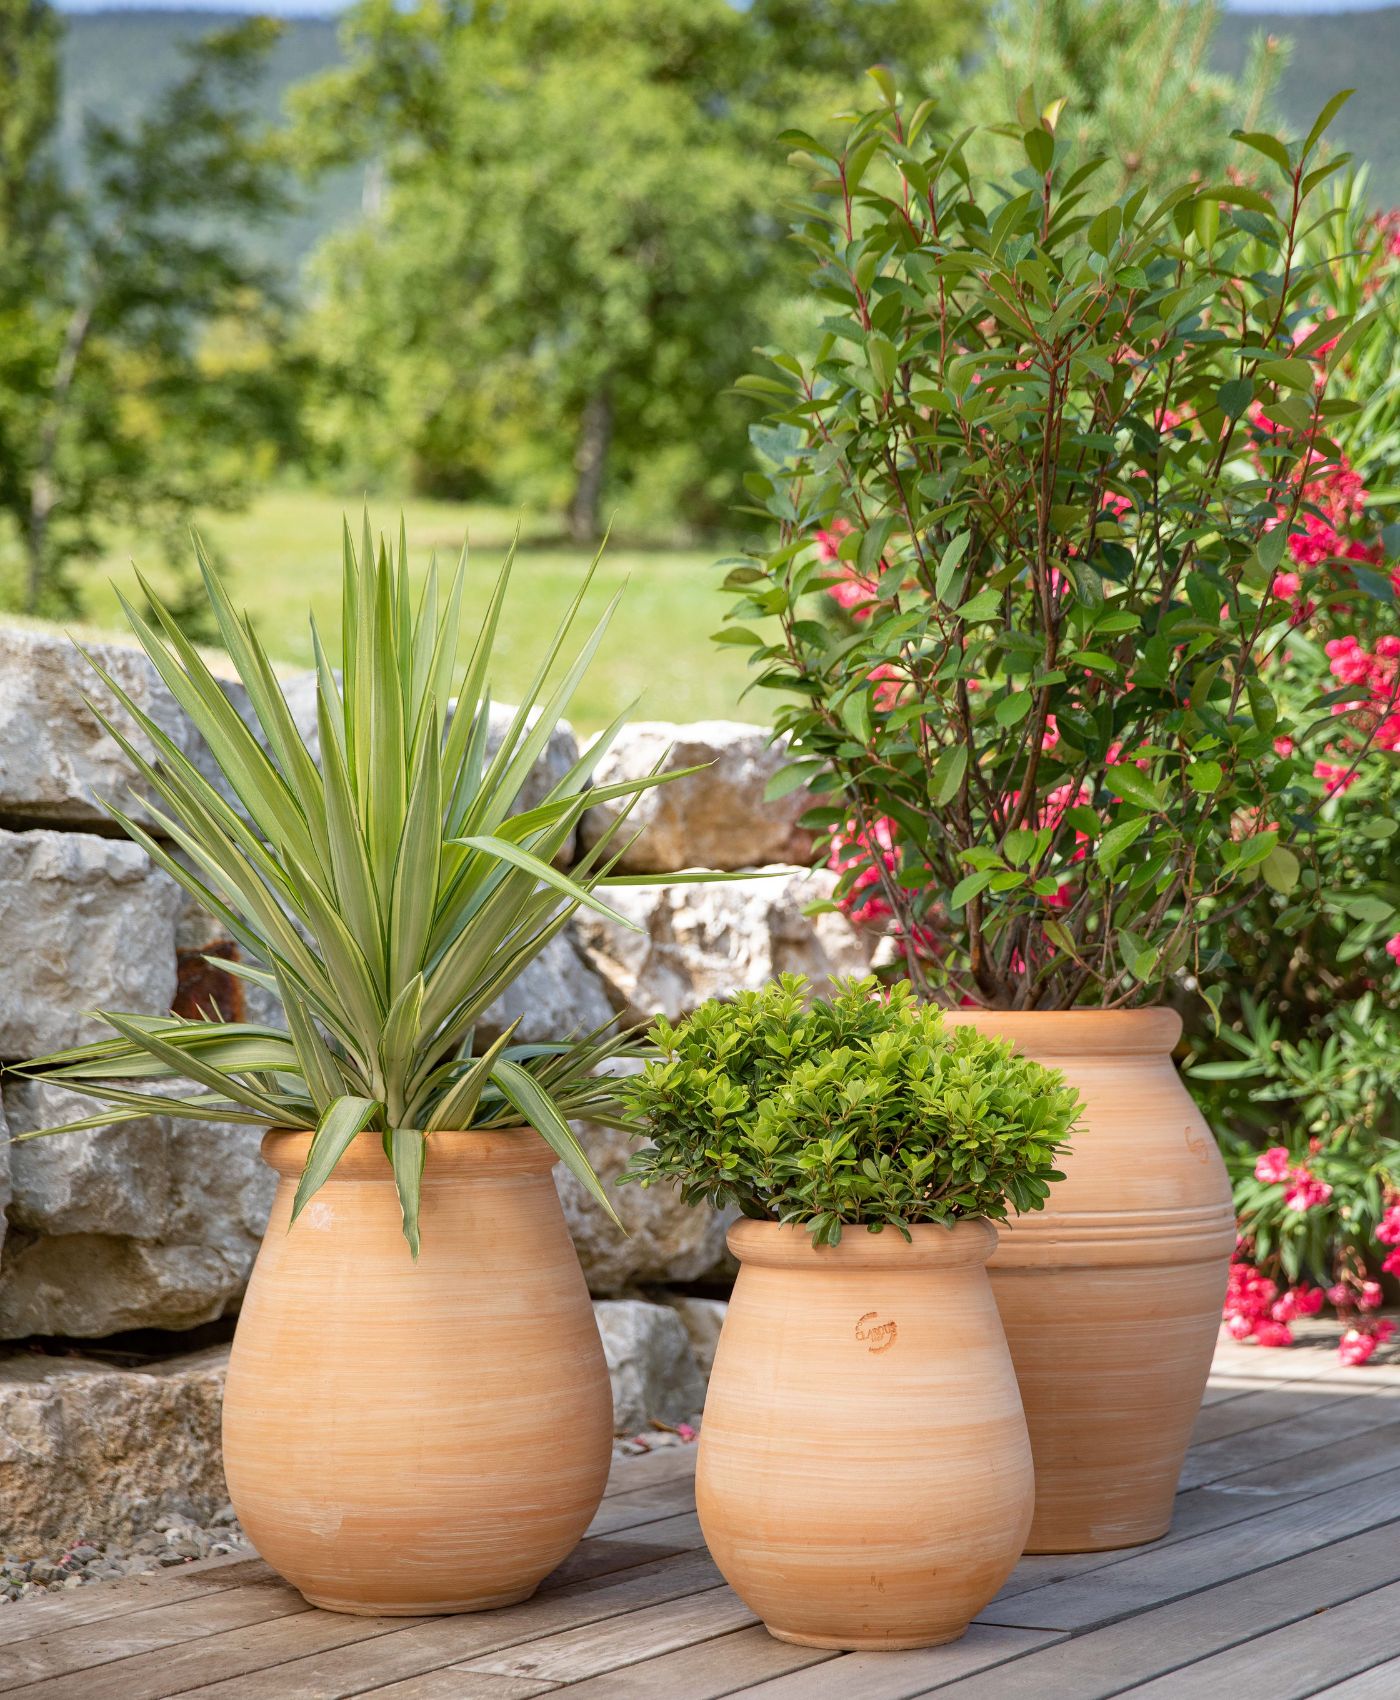 Des plantes vertes et fleuries dans des pots en terre cuite sur une terrasse extérieur